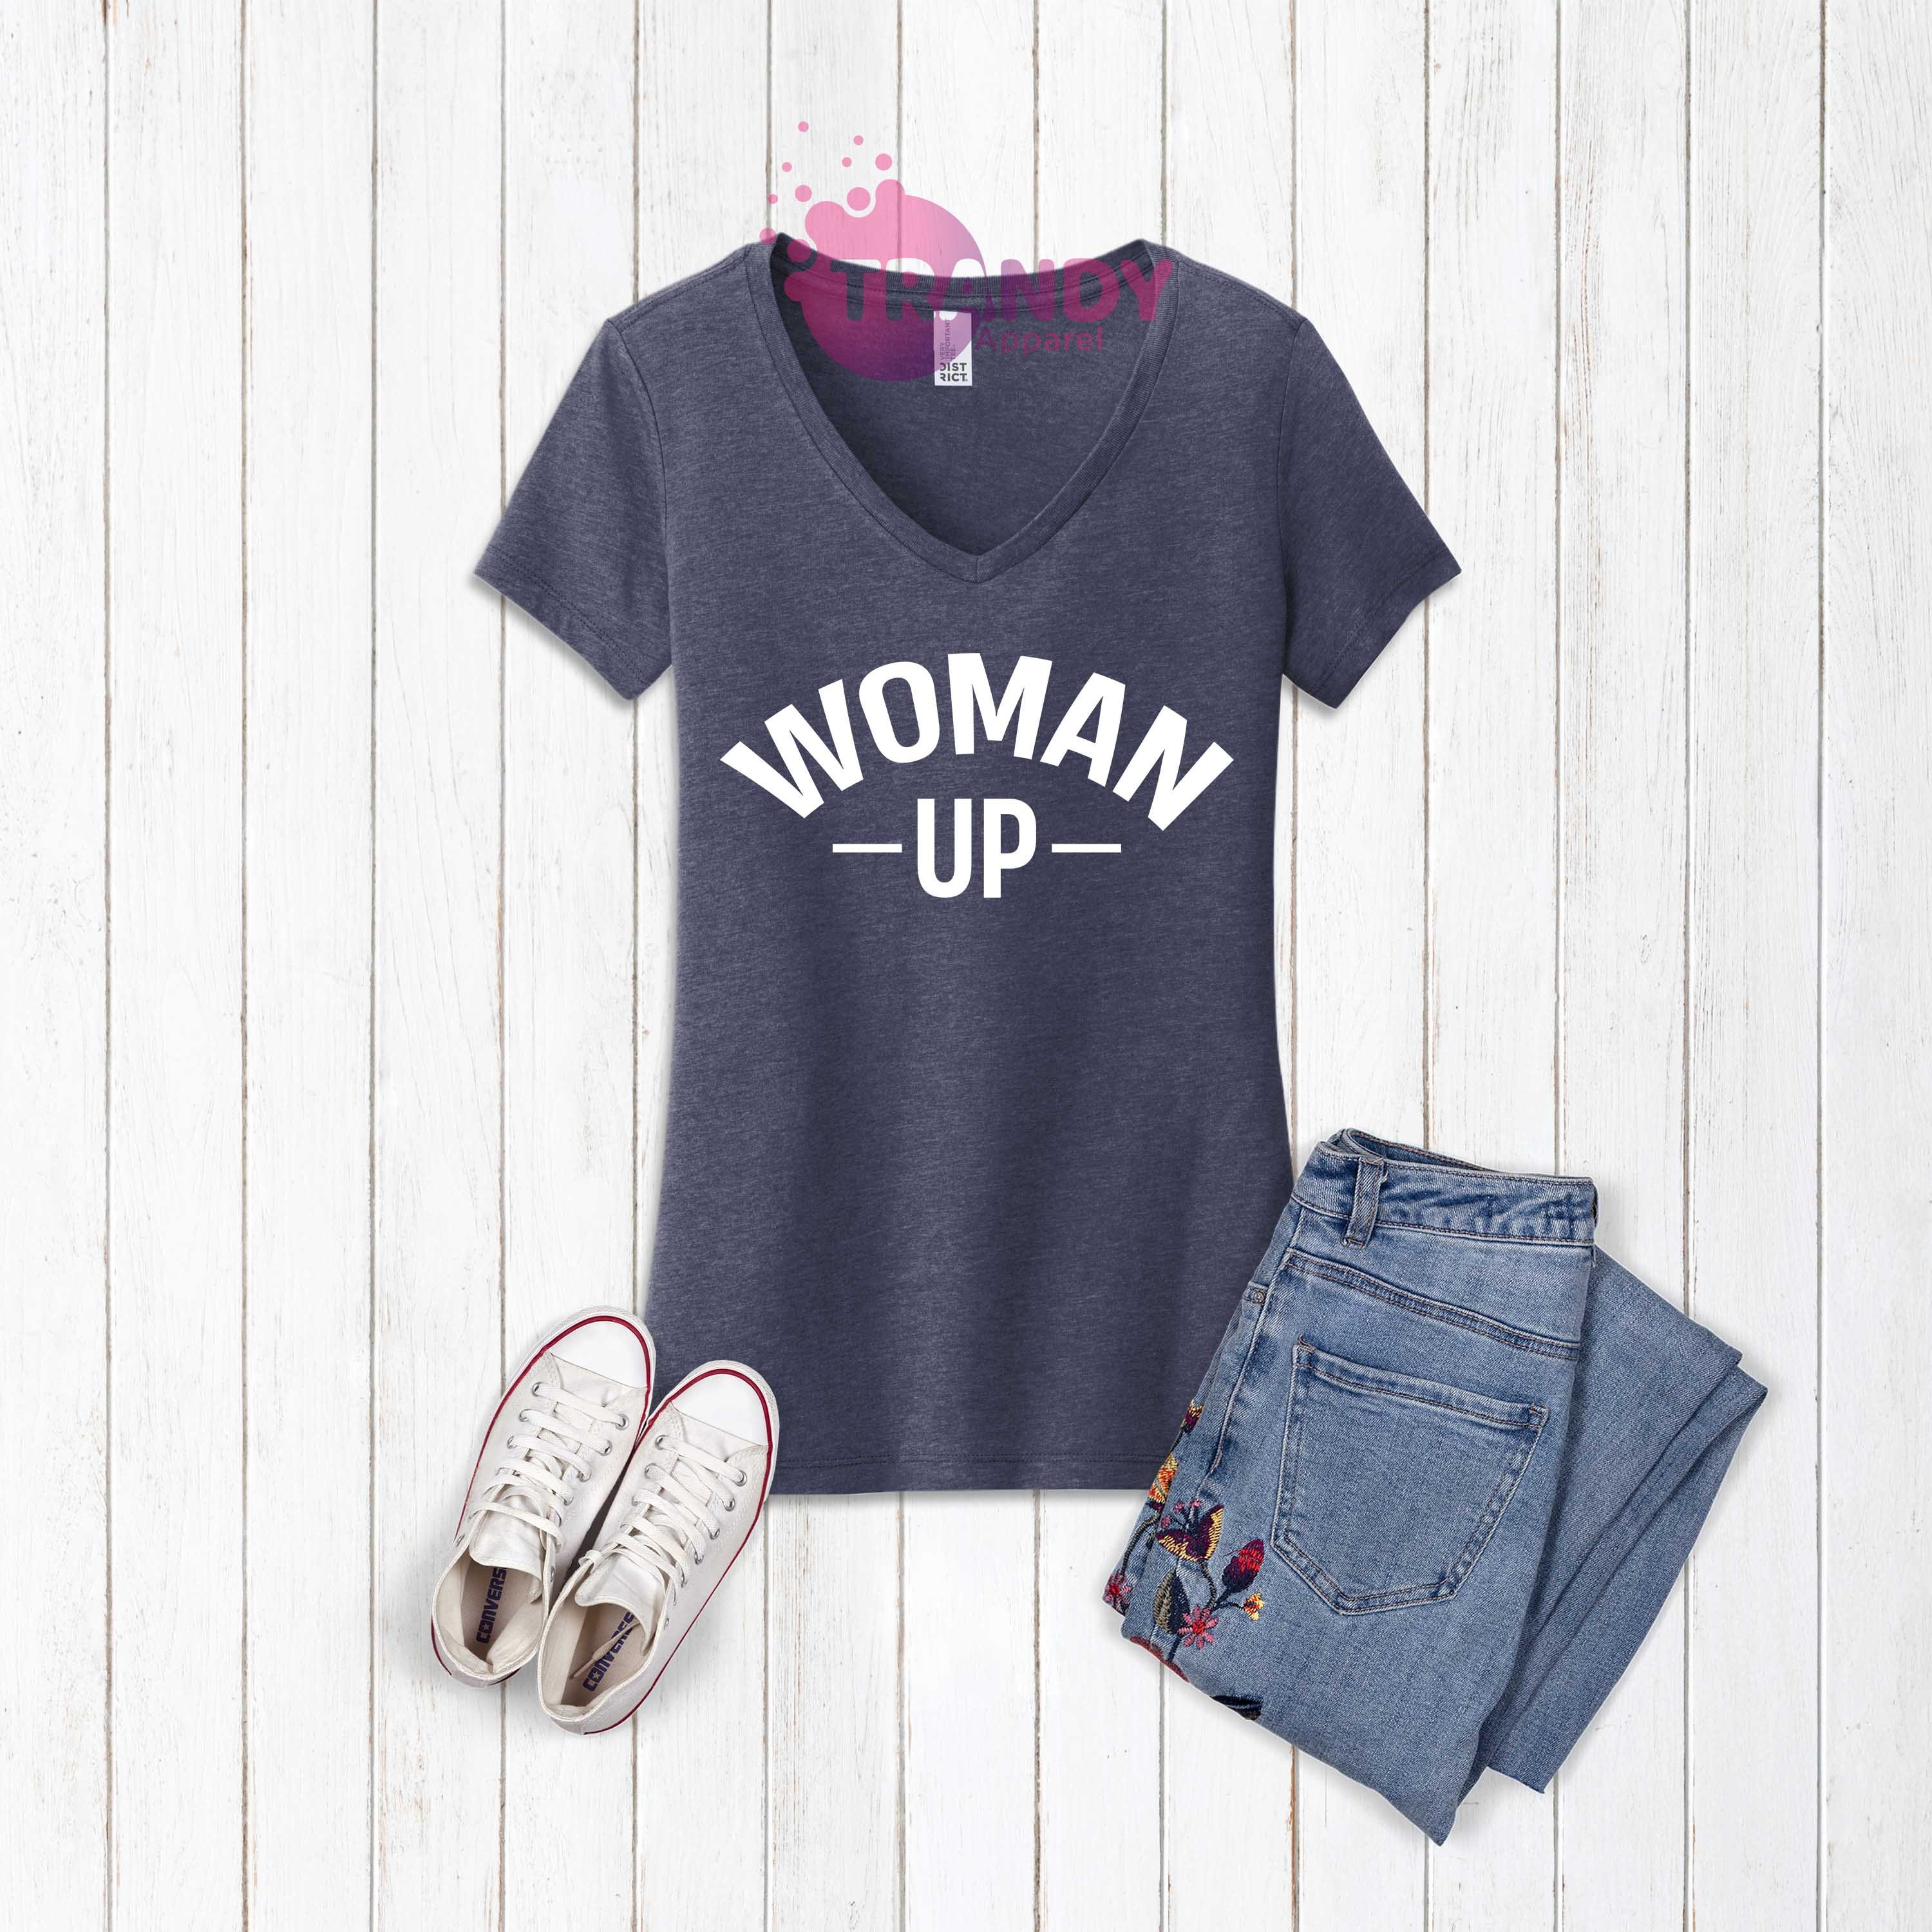 Discover Woman Up T-shirt, Women Empowerment, Motivational Shirt, Inspirational Shirt, Feminist T-shirt, Women's Day Gift, Women's Support Shirt